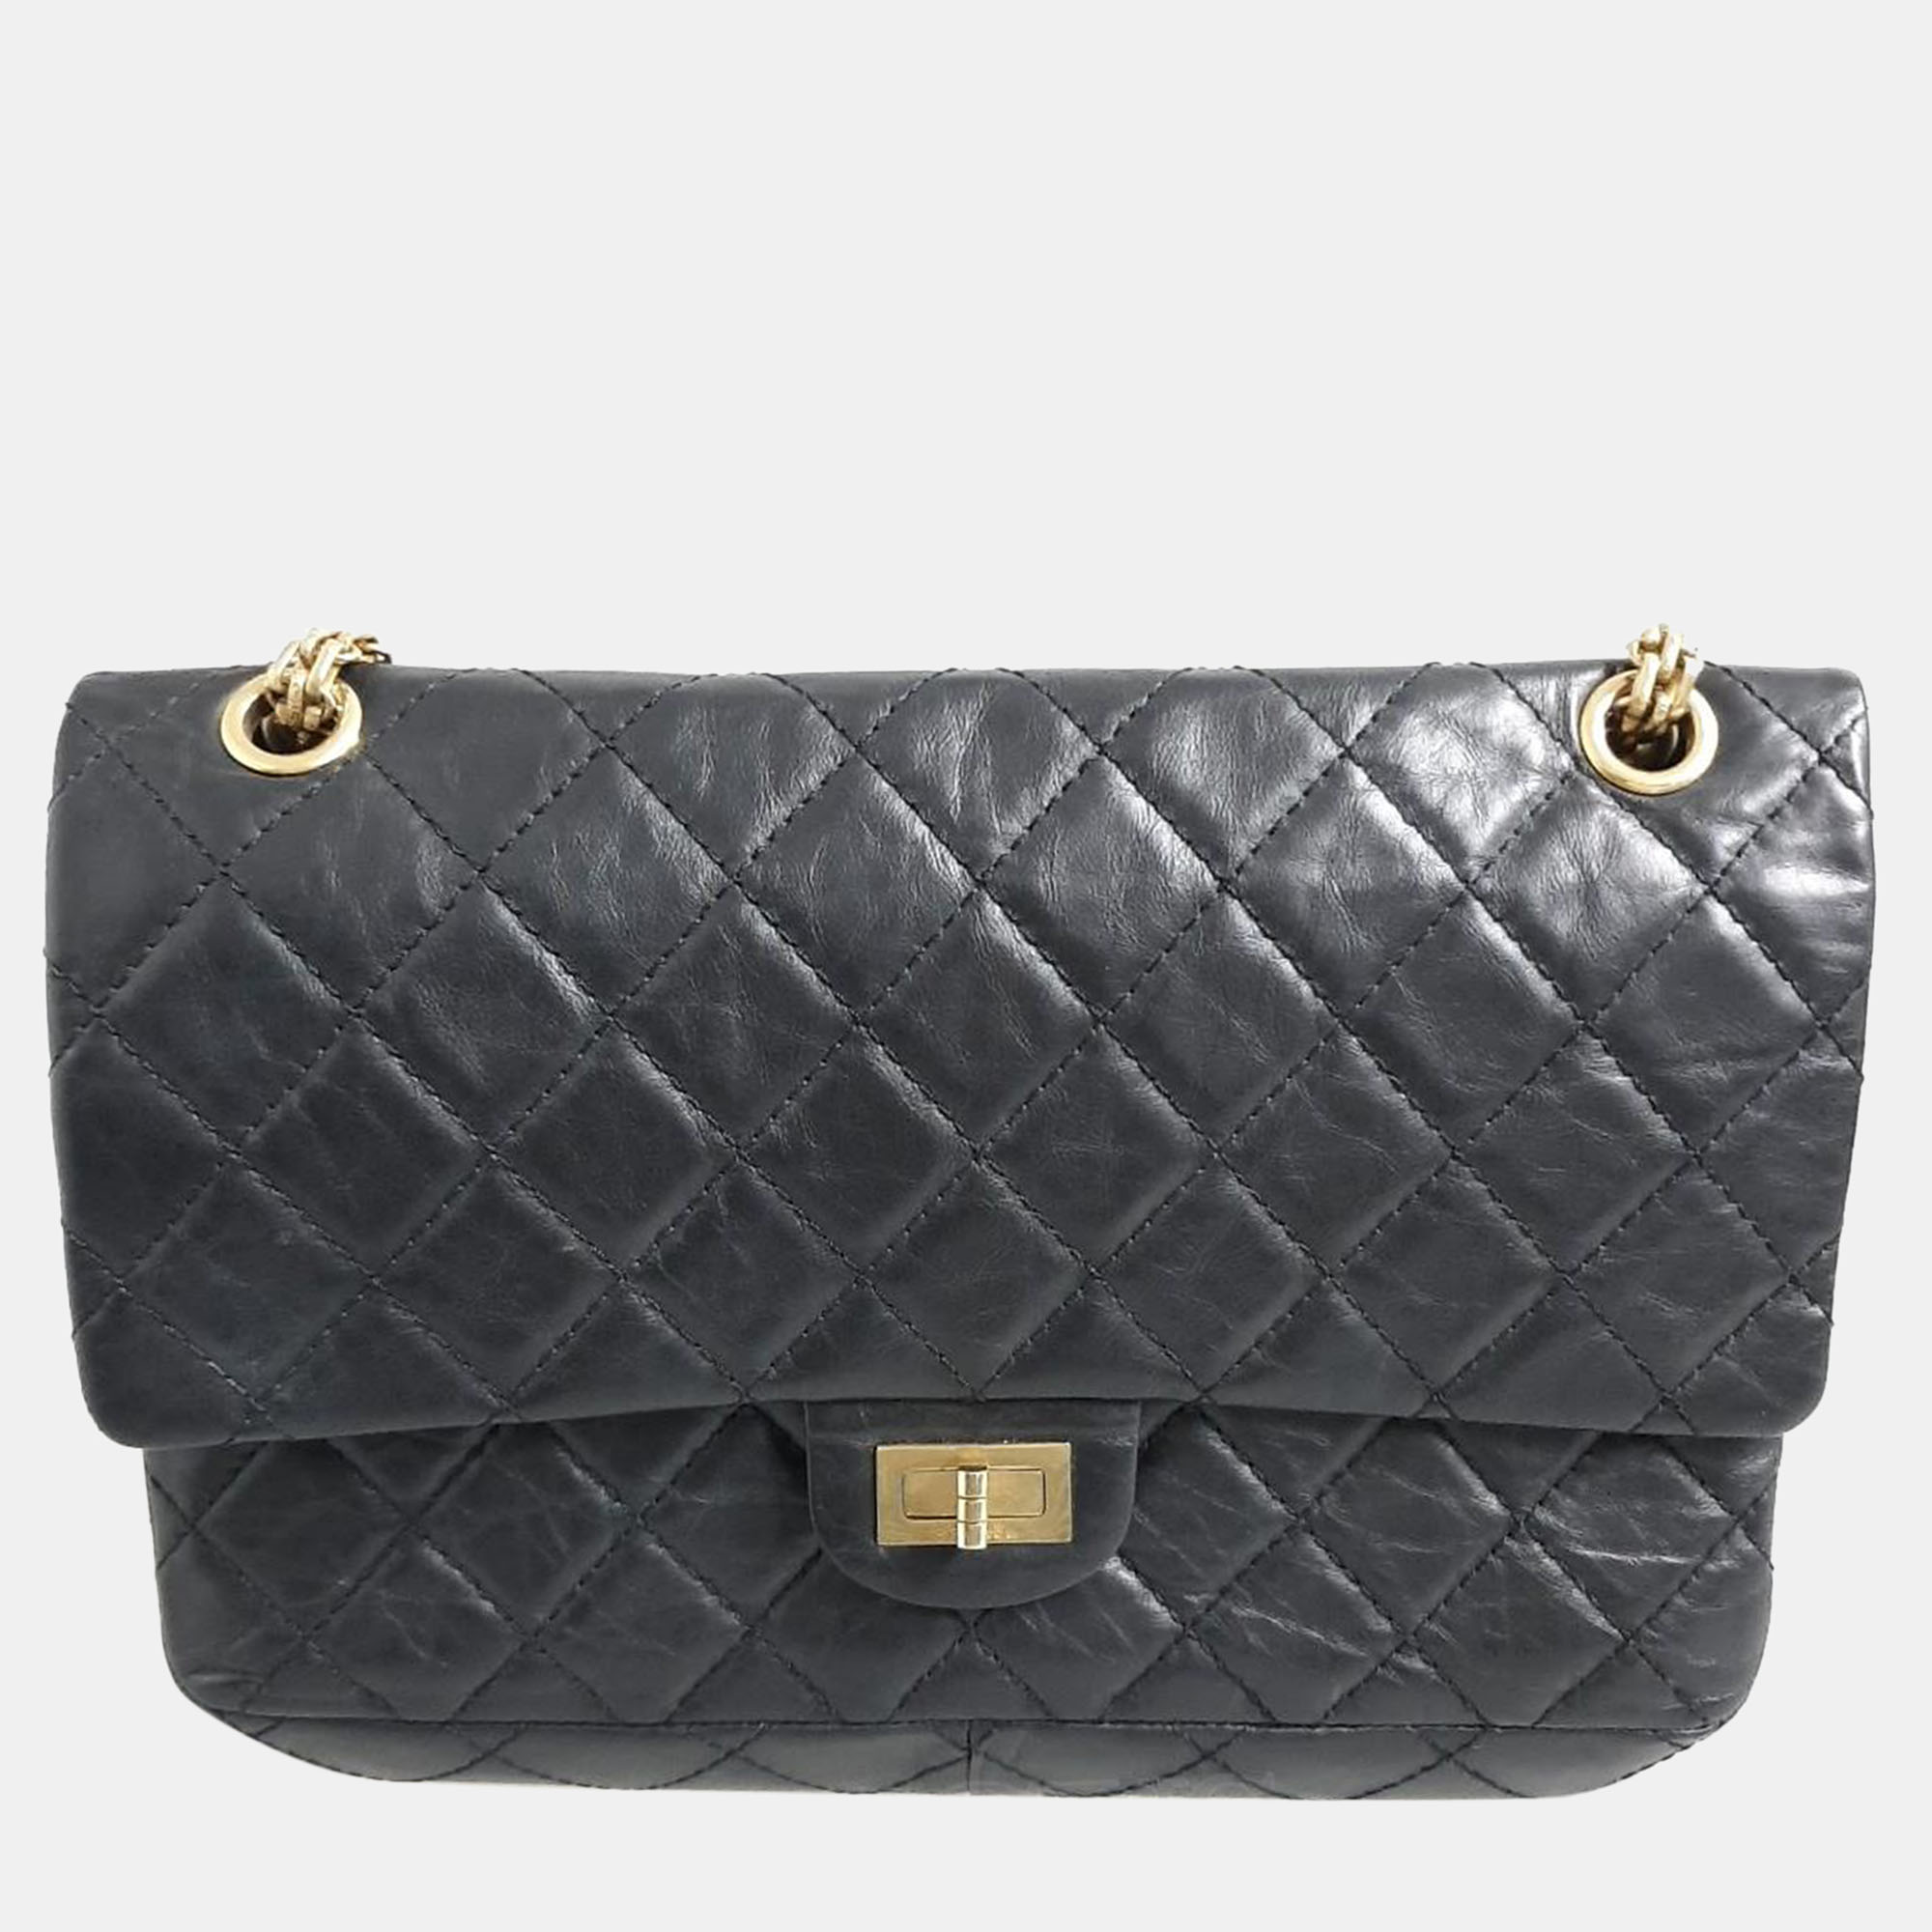 Chanel black leather medium vintage 2.55 shoulder bag